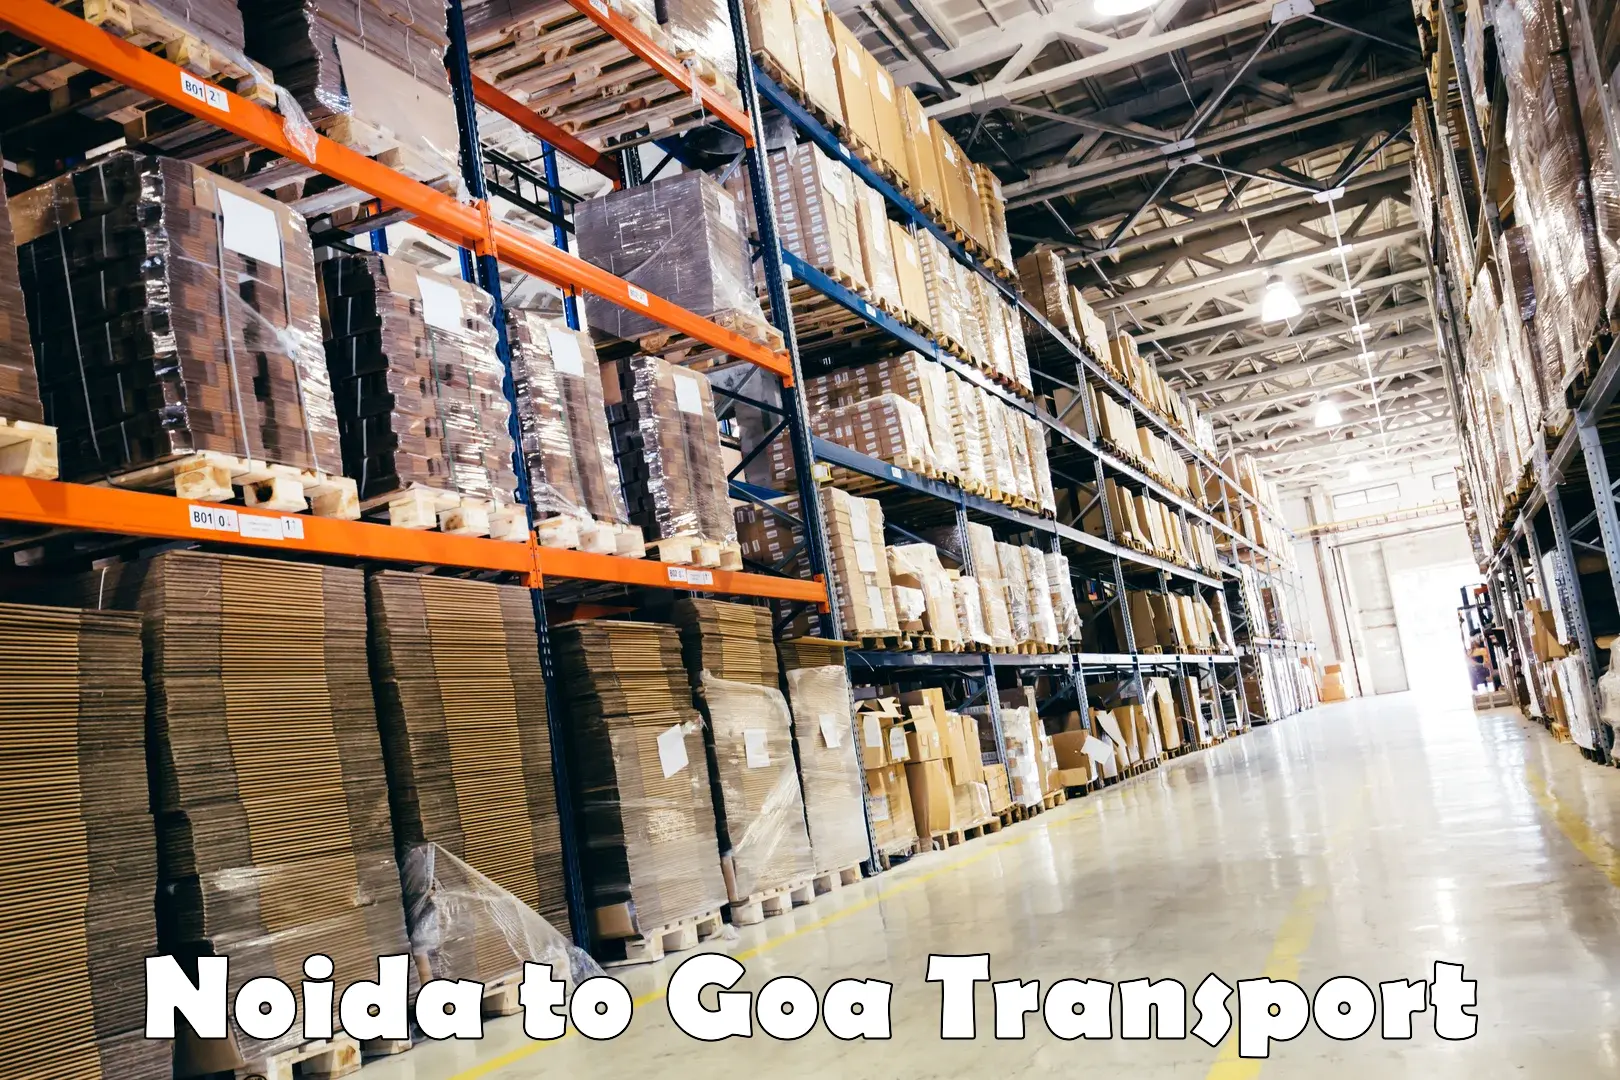 Two wheeler transport services Noida to Goa